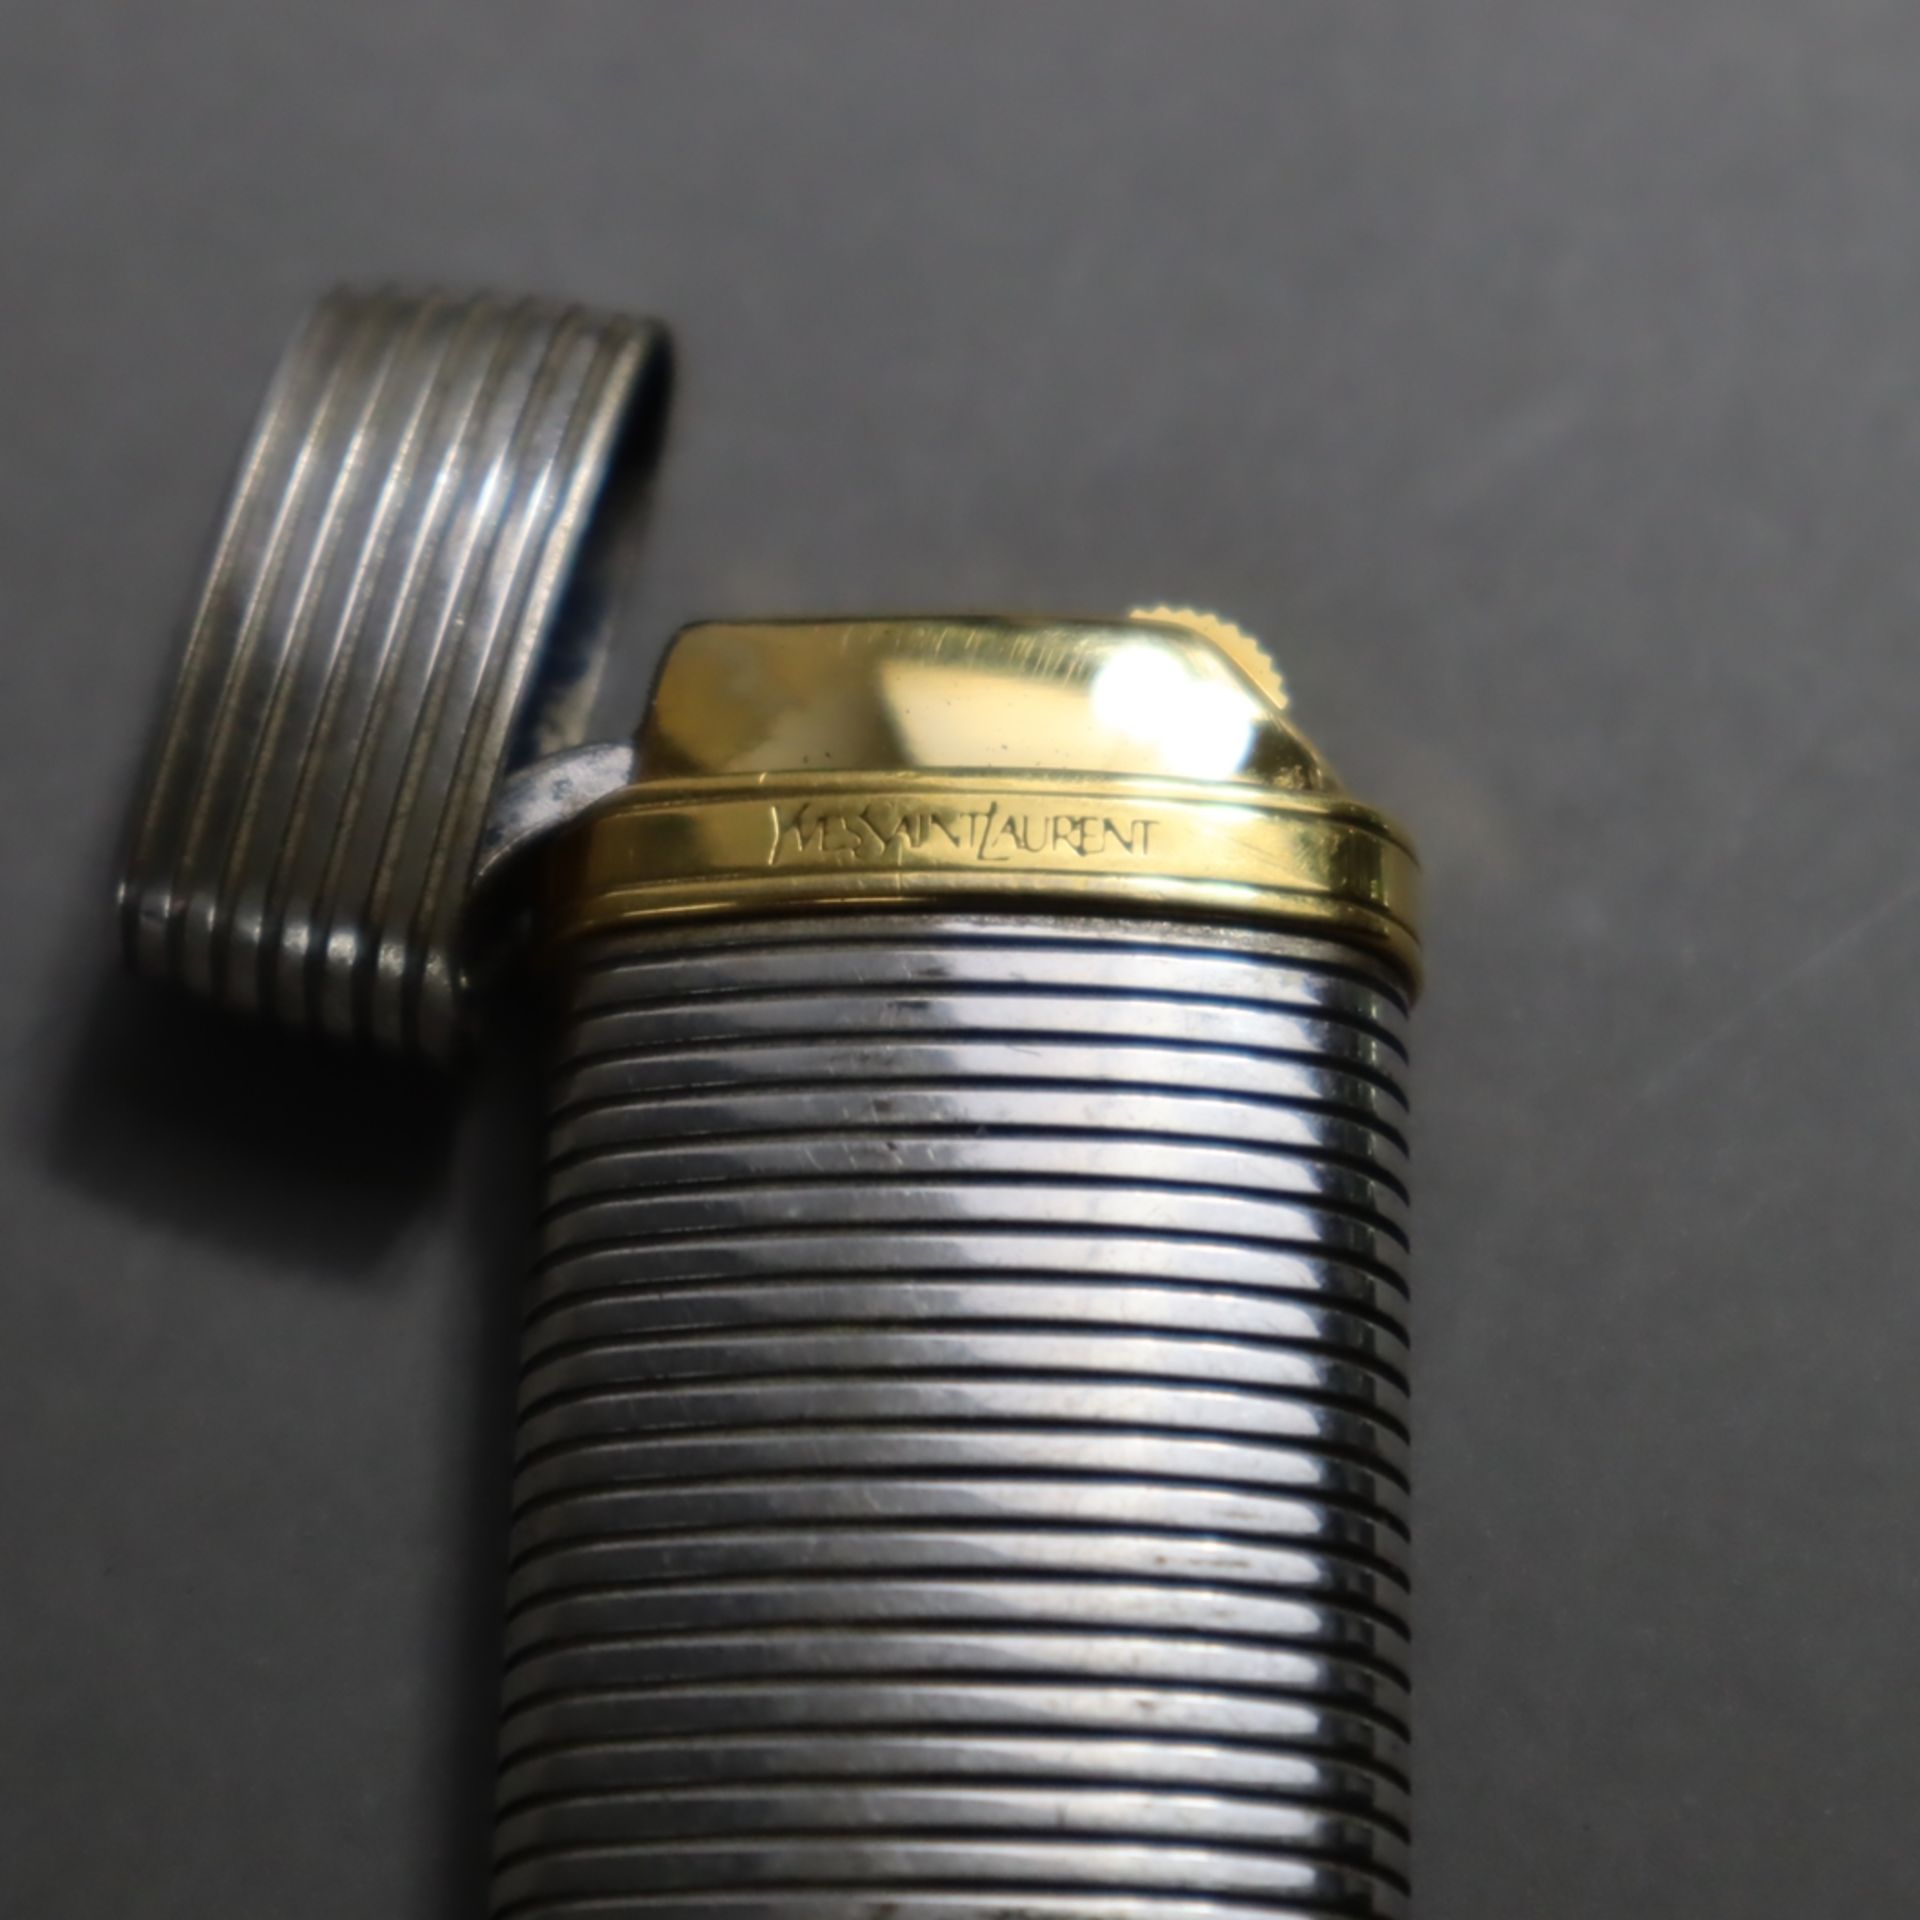 Feuerzeug - Yves Saint Laurent, gerilltes Metallgehäuse mit goldfarbenem Logodetail, Deckel innen g - Bild 3 aus 4